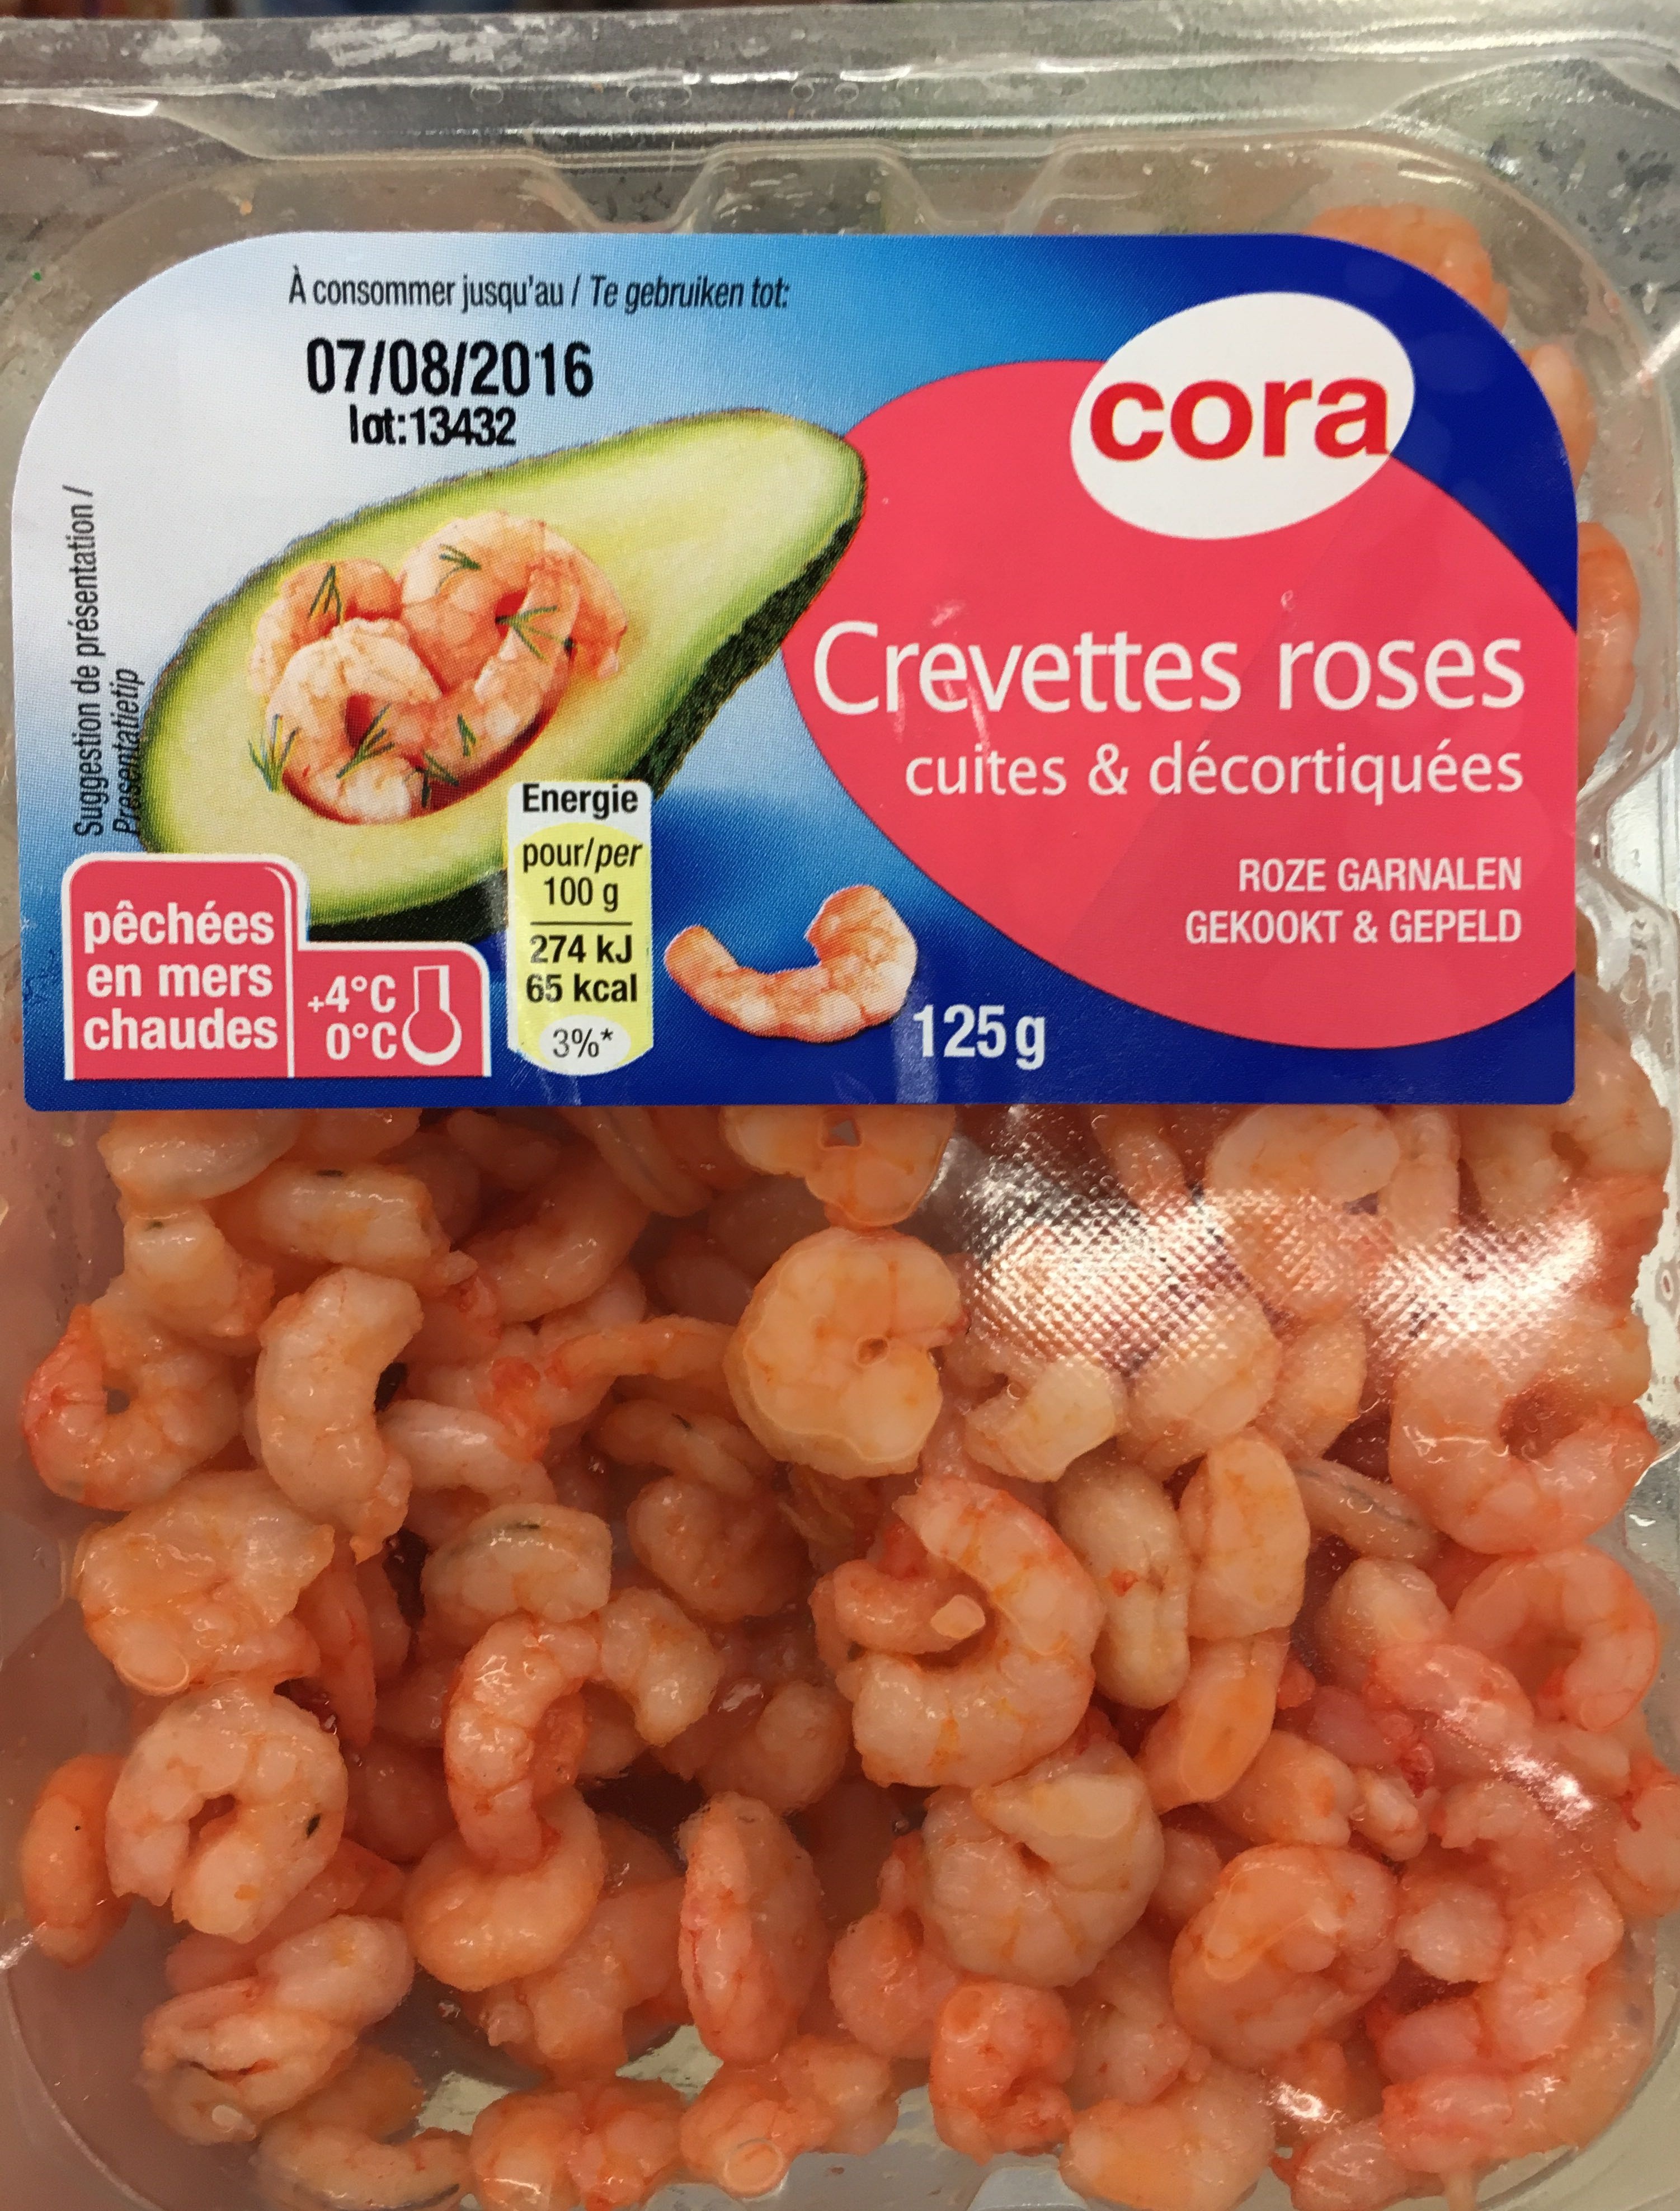 Crevettes roses cuites & décortiquées - Product - fr